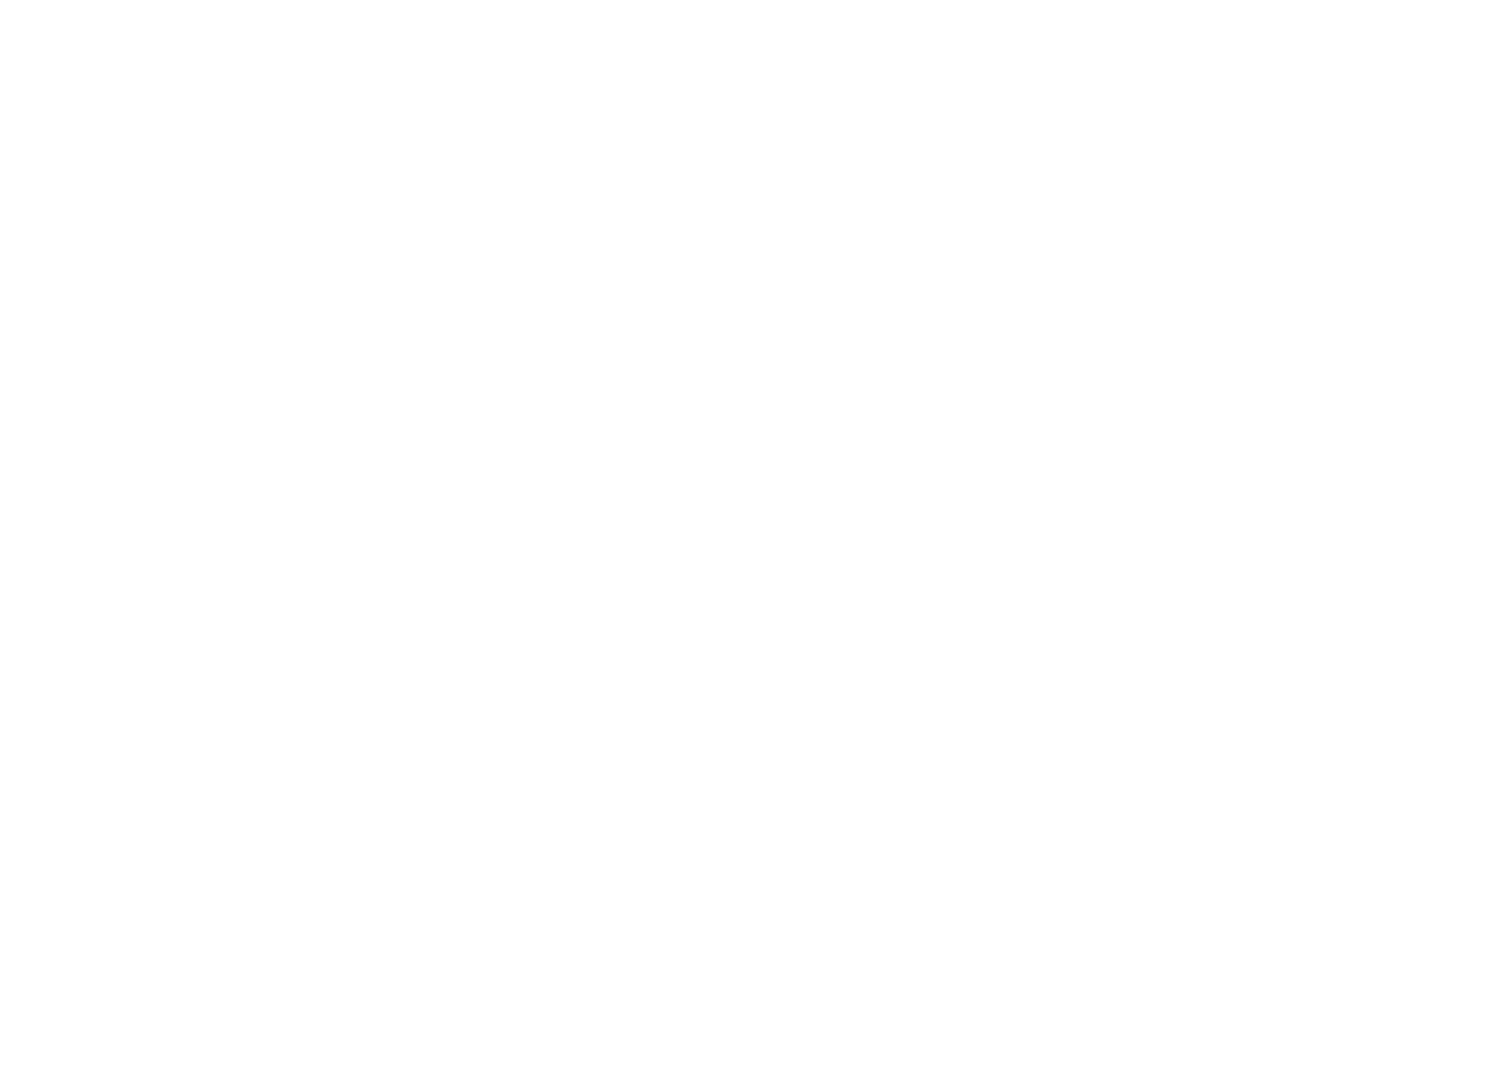 XYZ Films